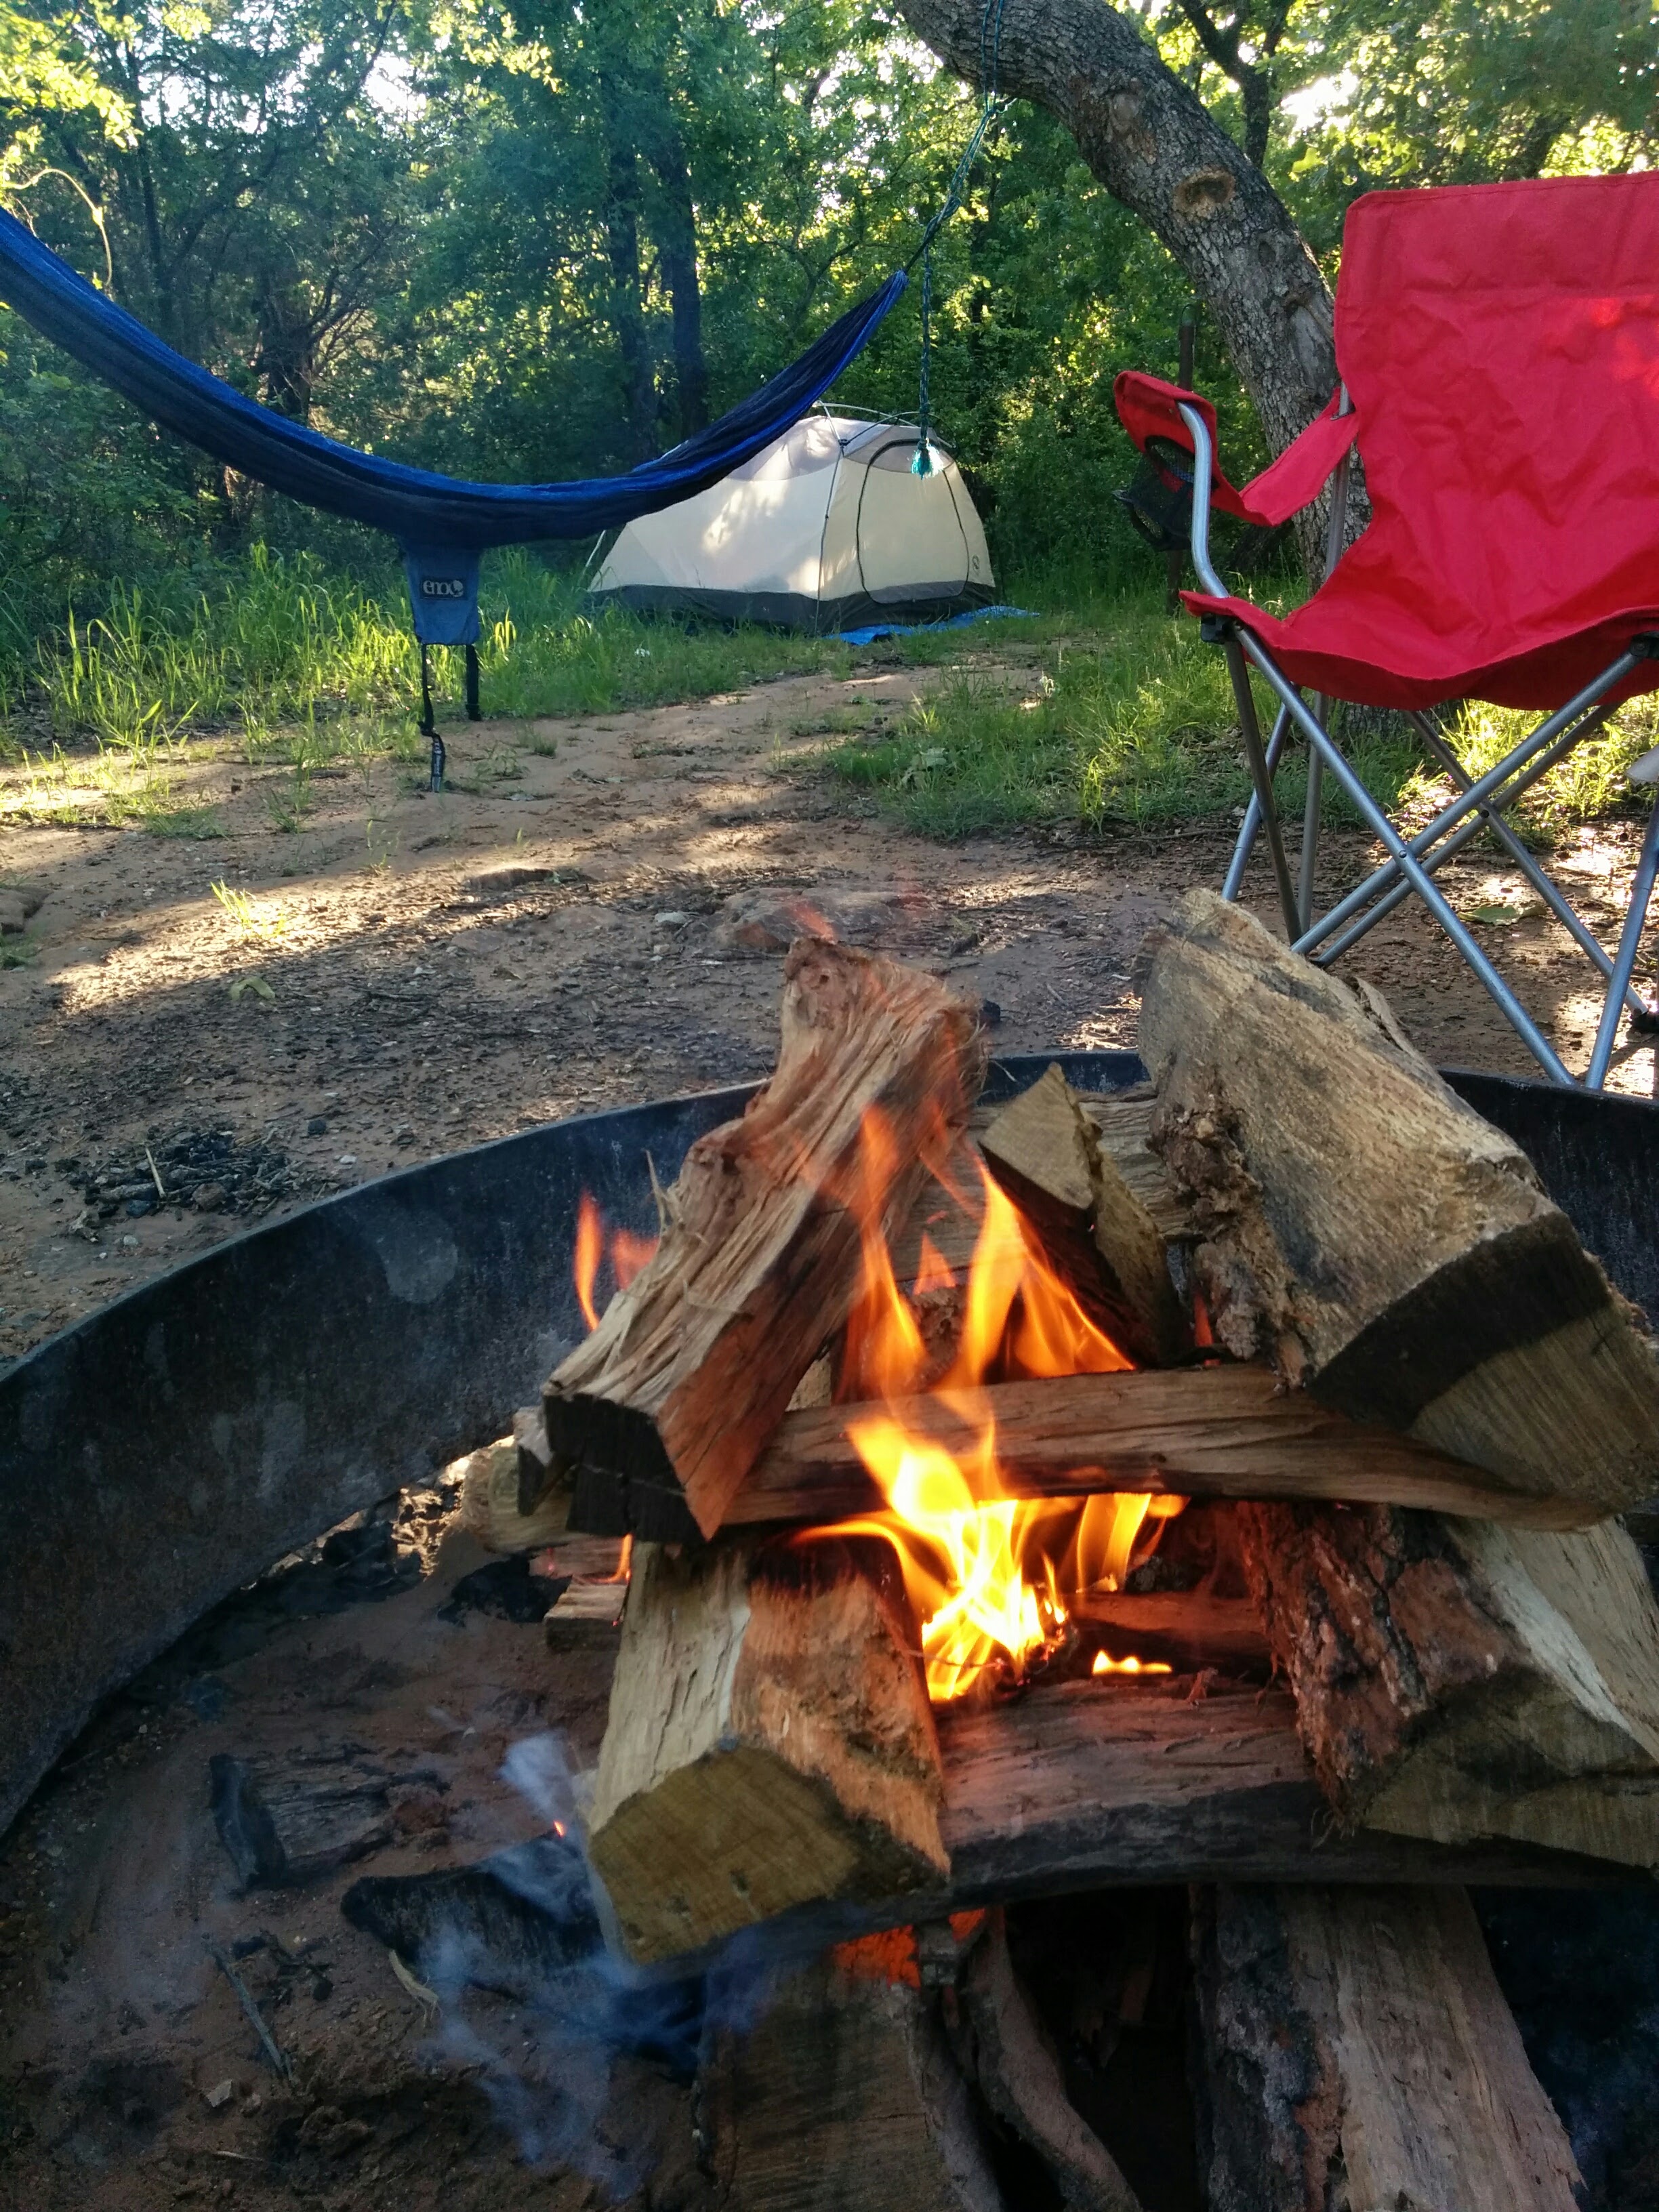 I heart camping